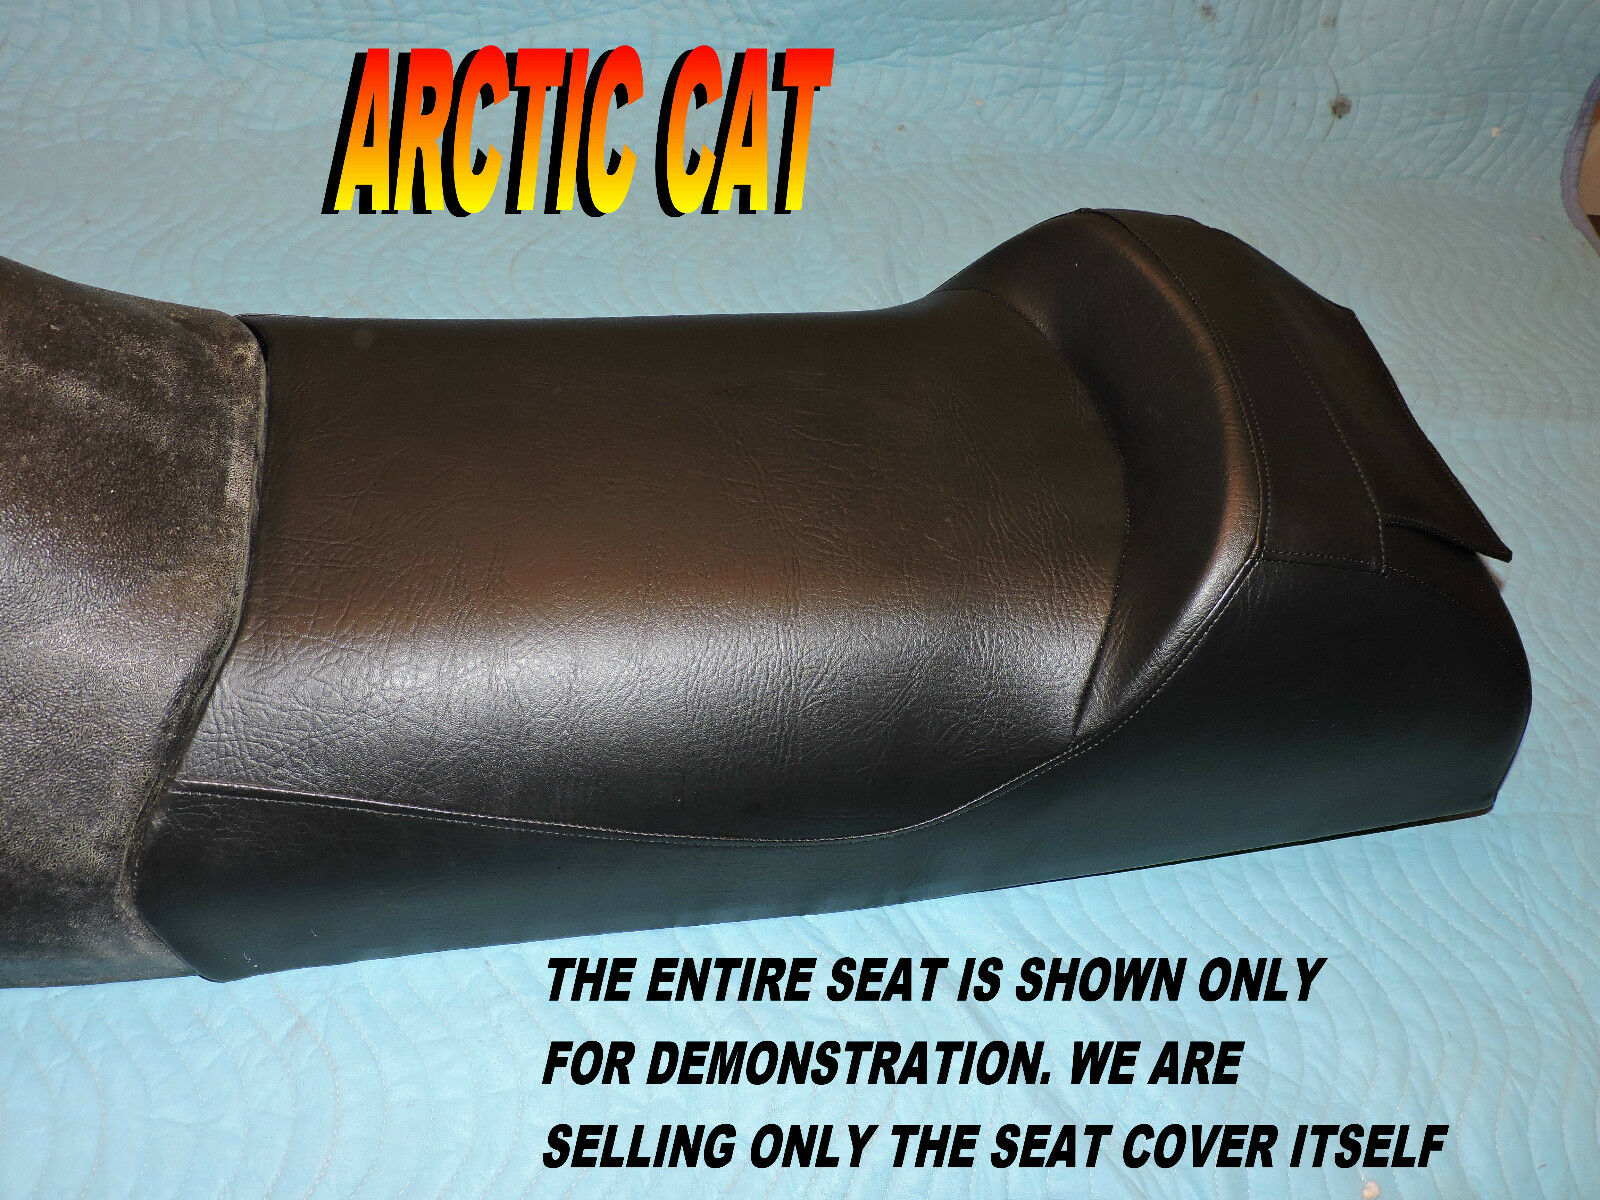 Arctic Cat Z370 Z440 Z570 Zl500 Zl550 Zl600 Zl800 2001-07 New Seat Cover 794a